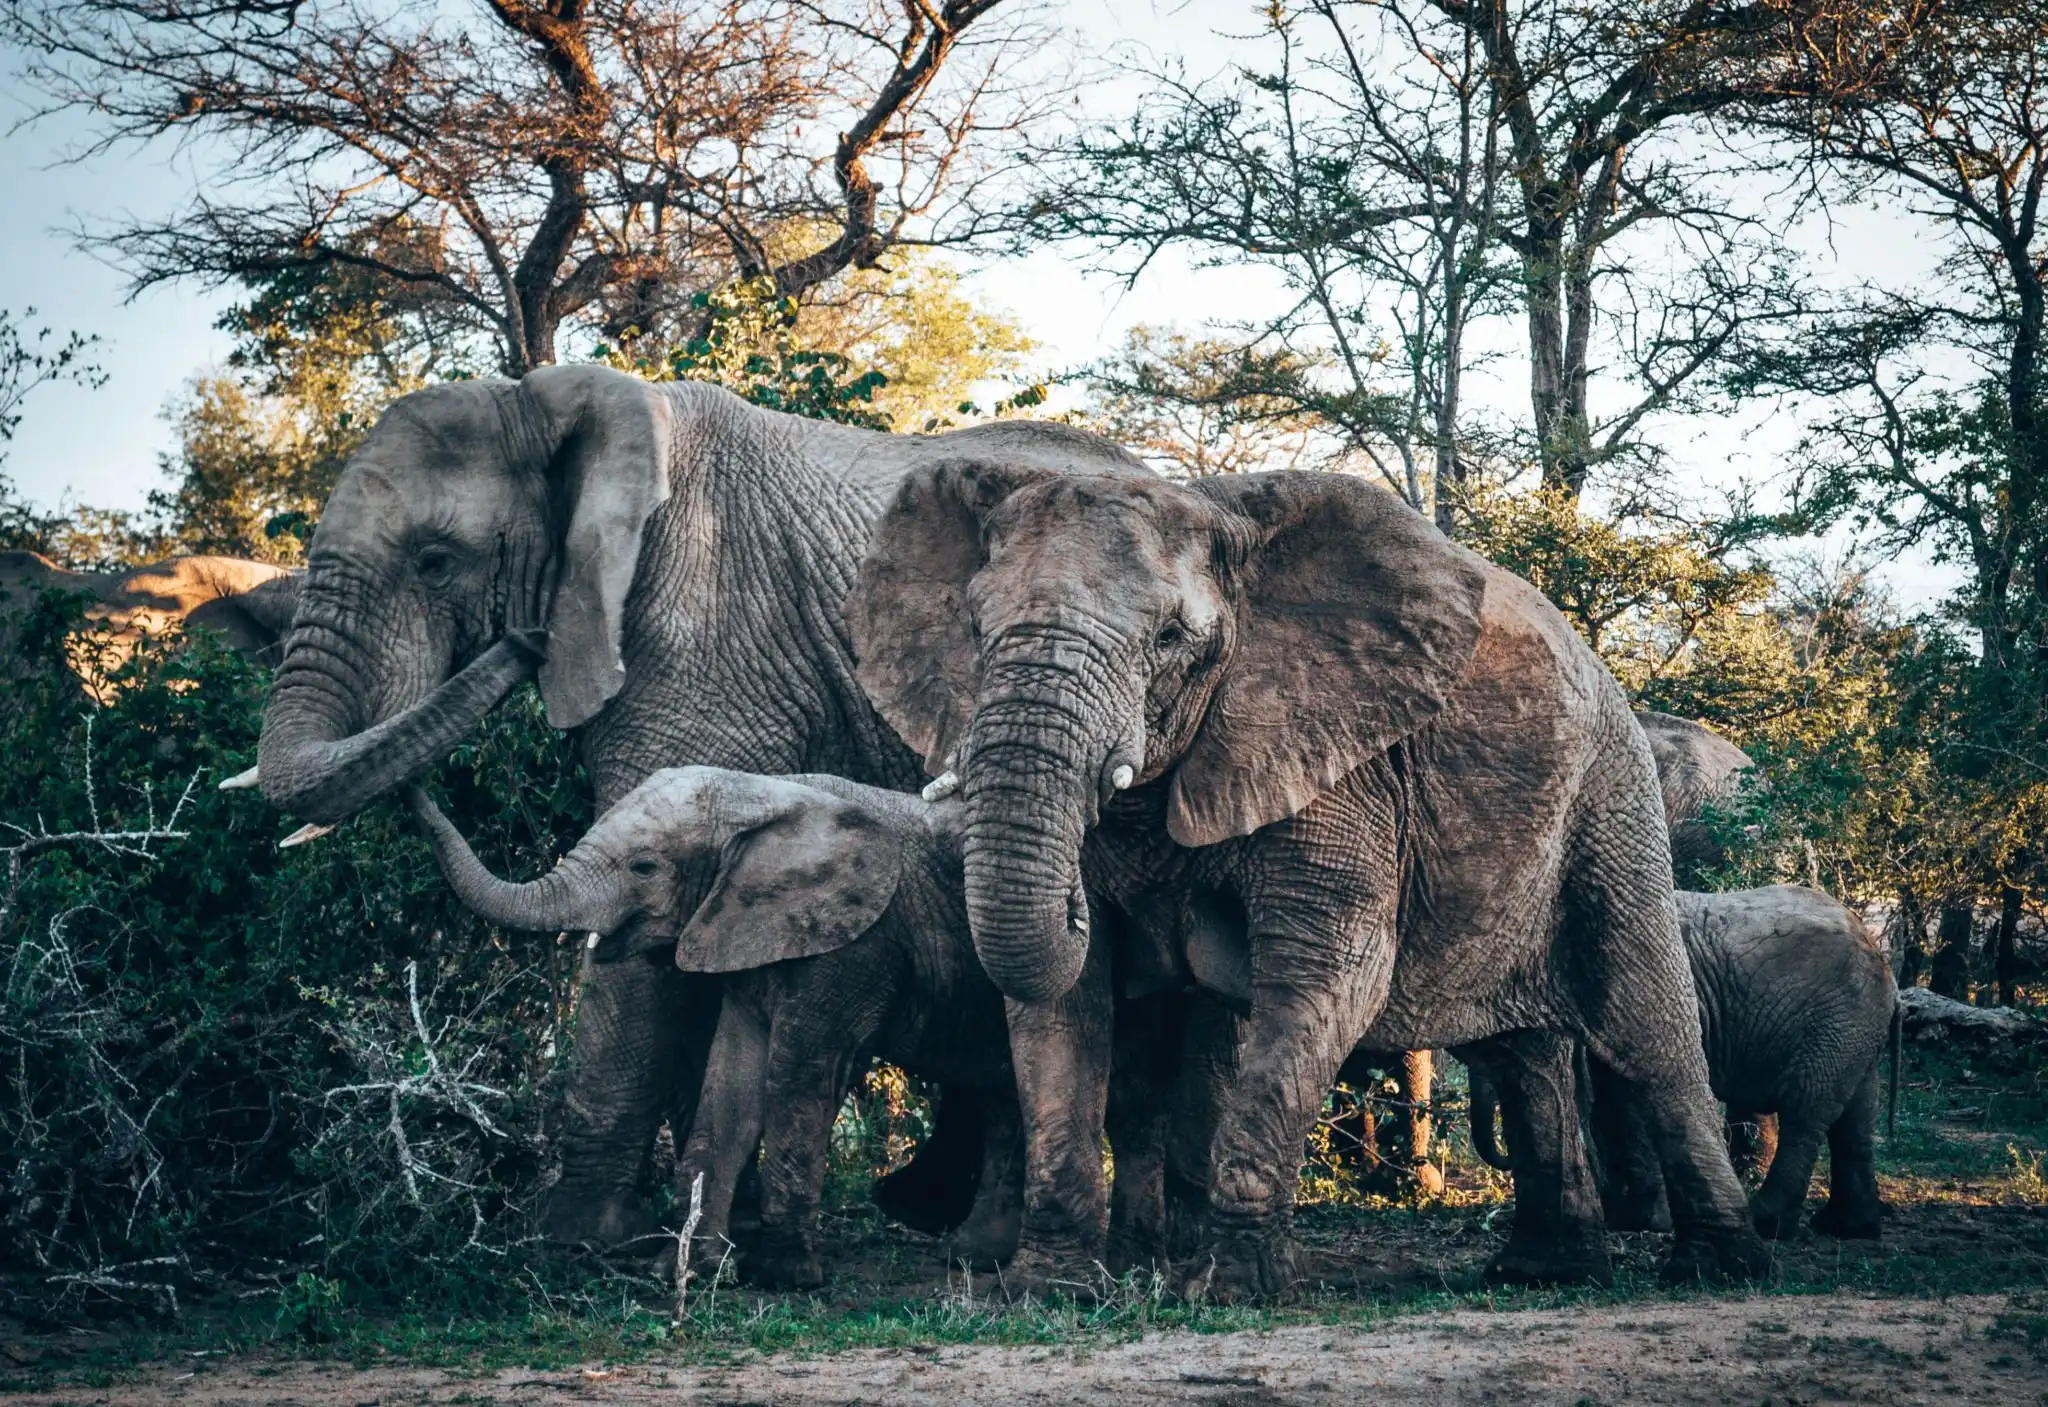 Nature hashtags - wildlife elephants